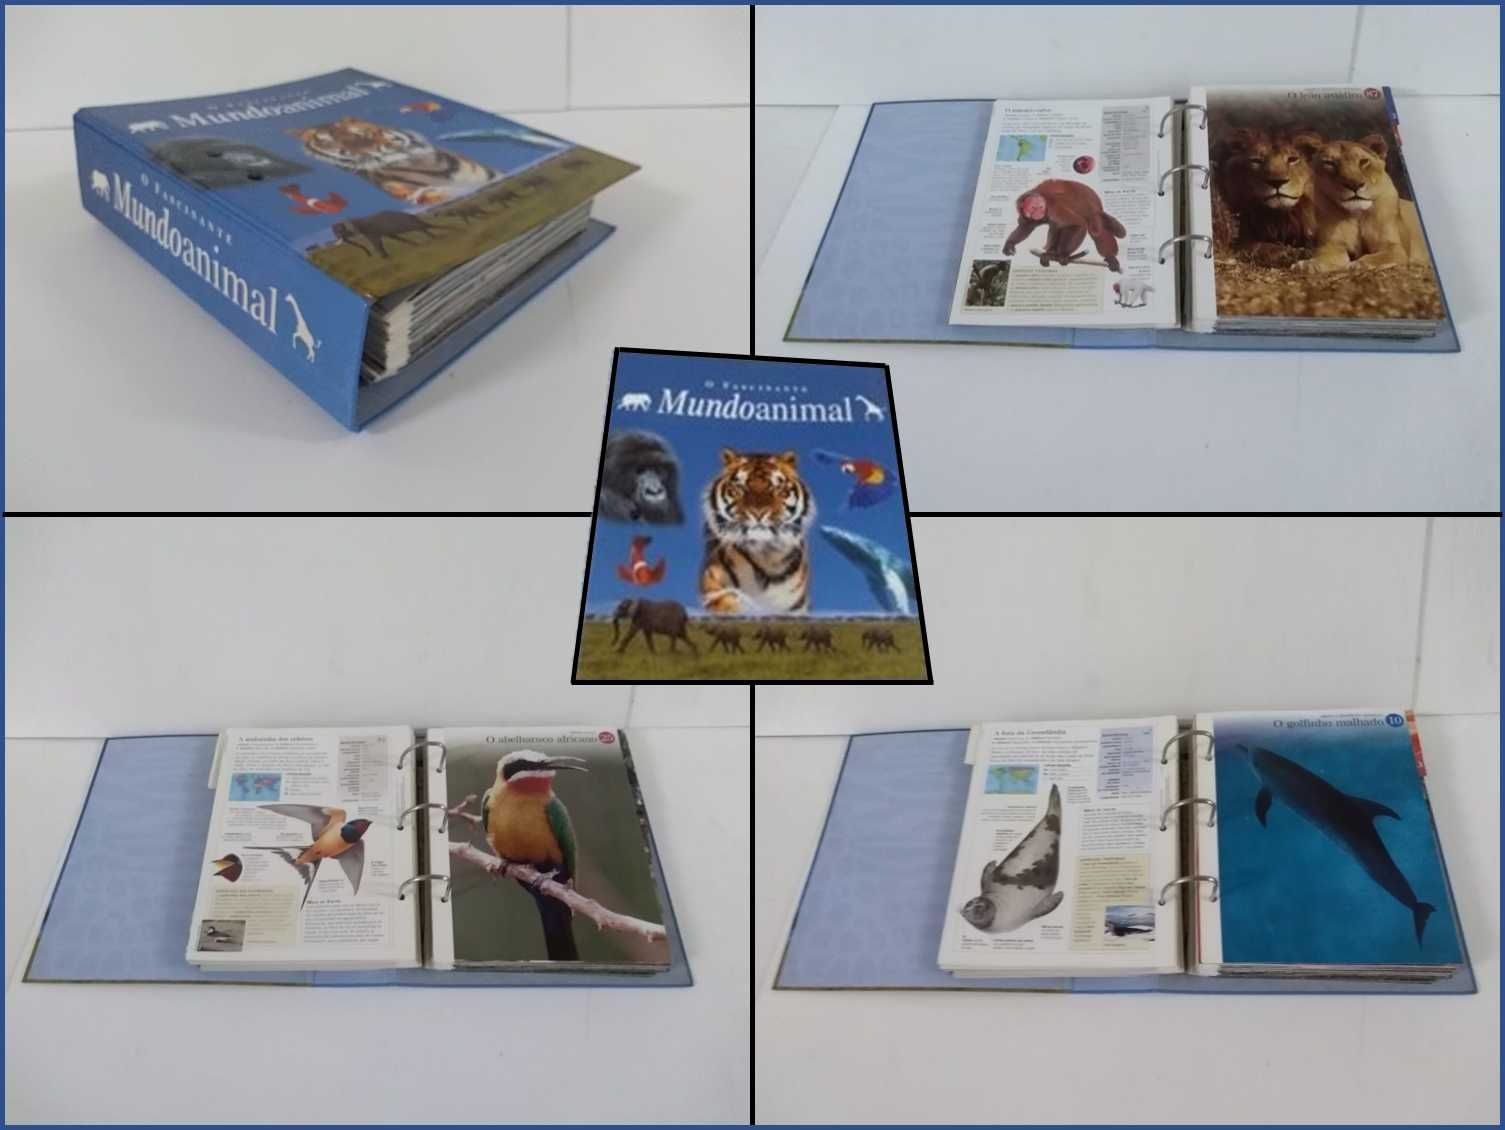 Diversos livros de ensino e cultura (ver imagens seguintes)